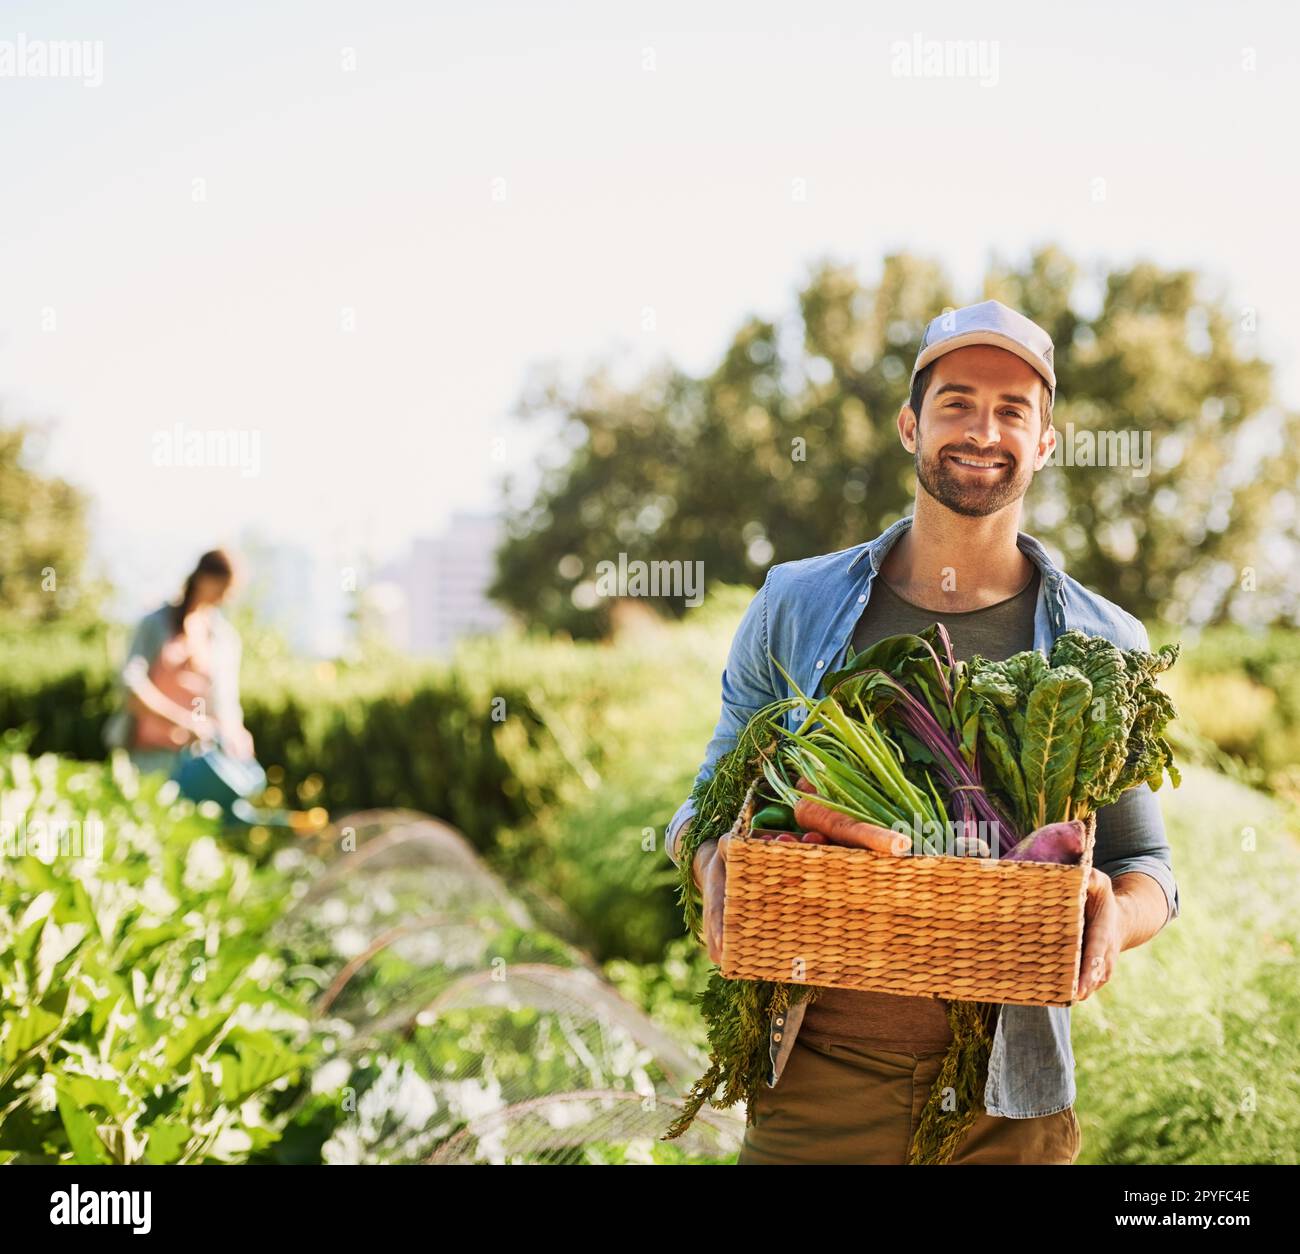 Per una cena fresca. Ritratto di un giovane contadino felice che raccoglie erbe e verdure in un cestino della sua fattoria. Foto Stock